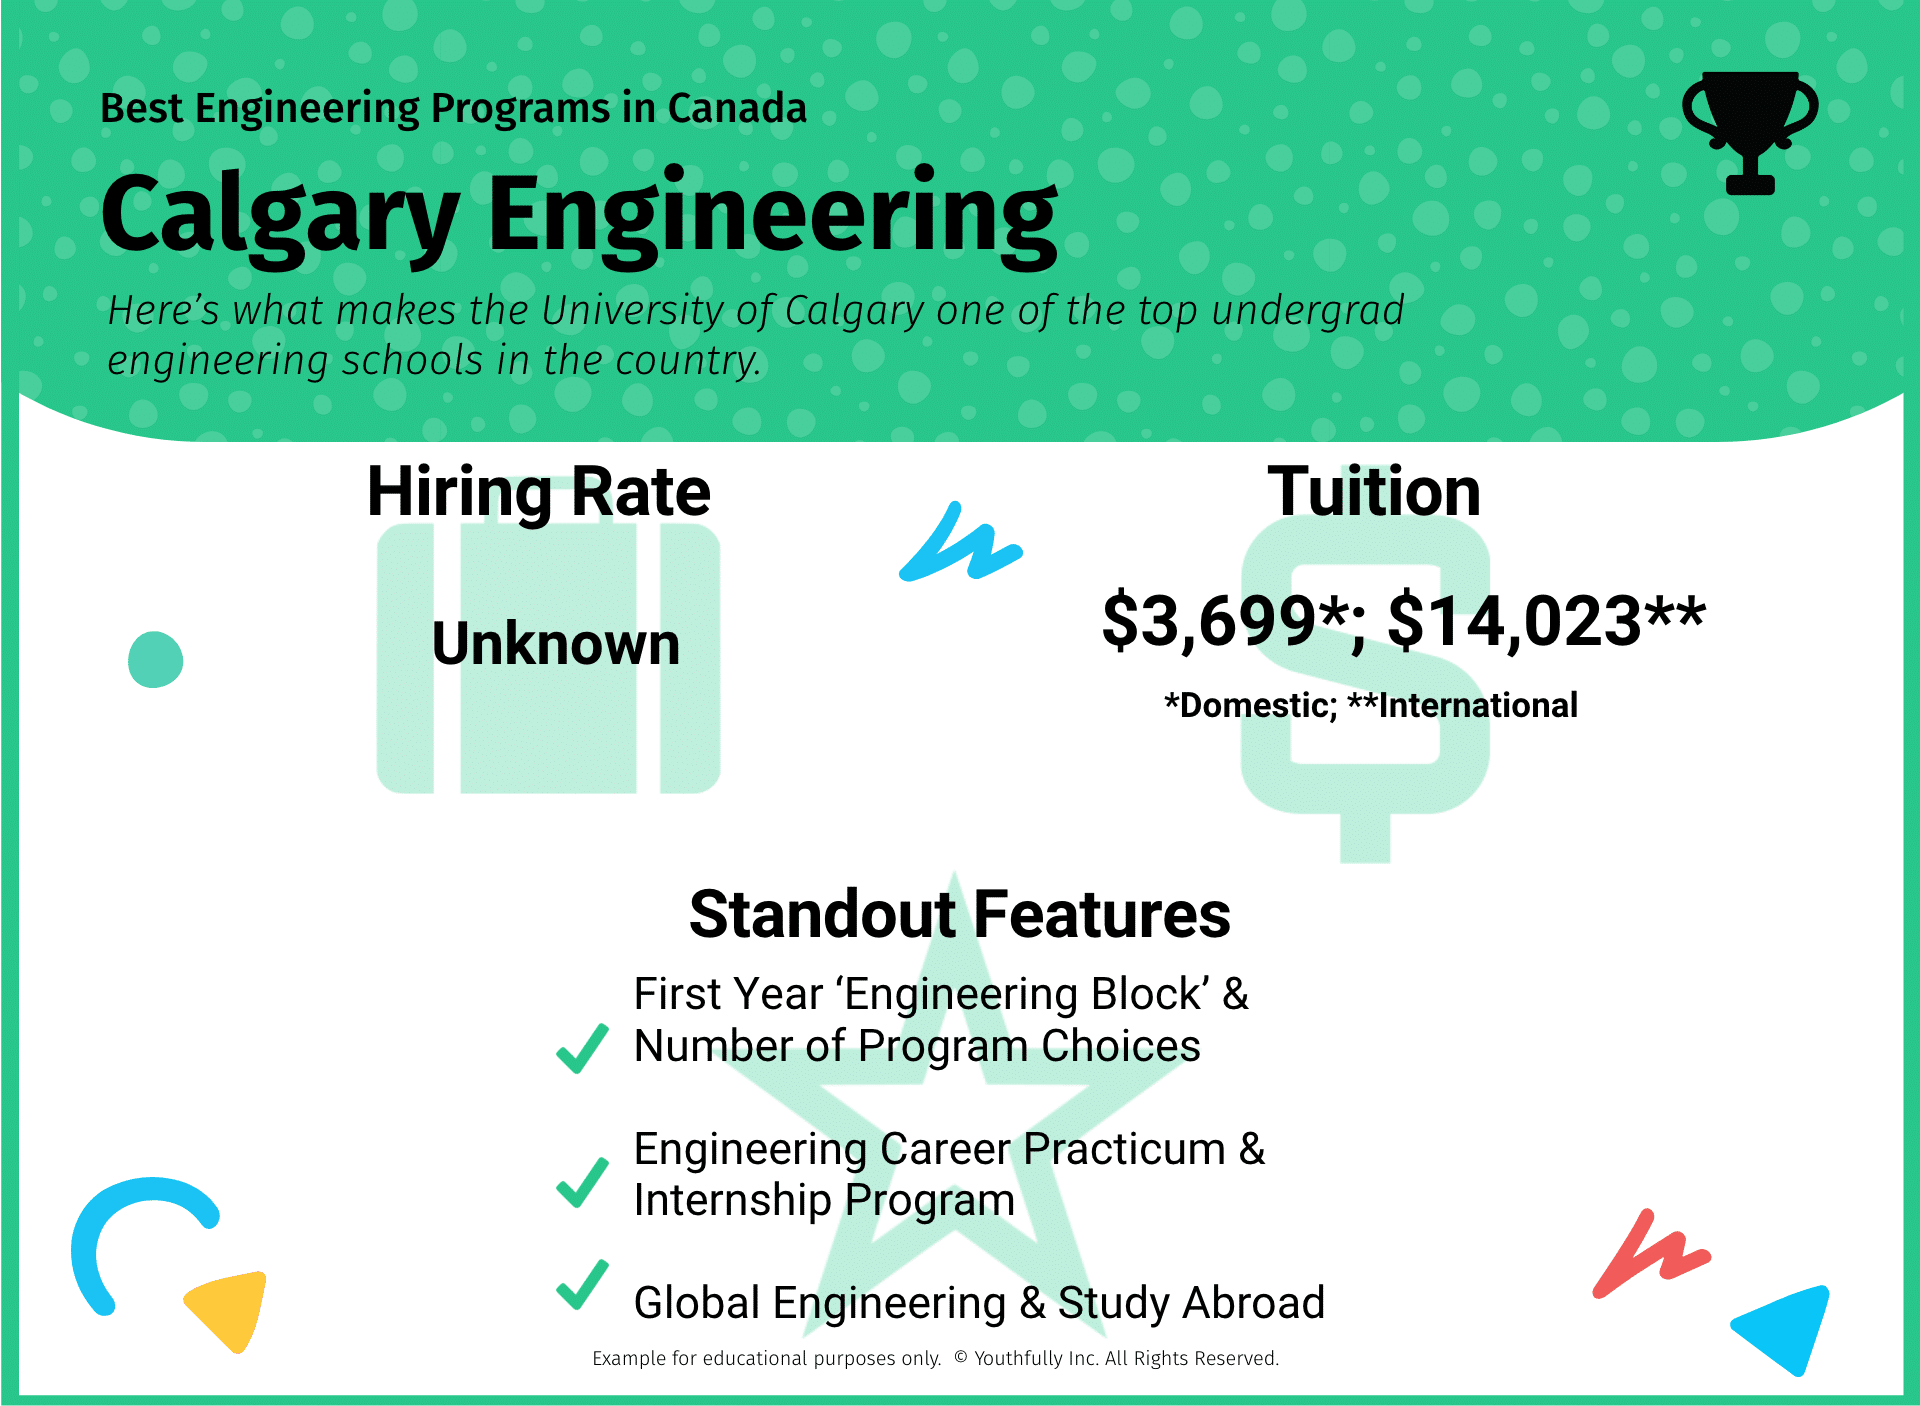 best engineering schools in canada best universities in canada for engineering undergraduate programs best engineering programs in canada calgary engineering